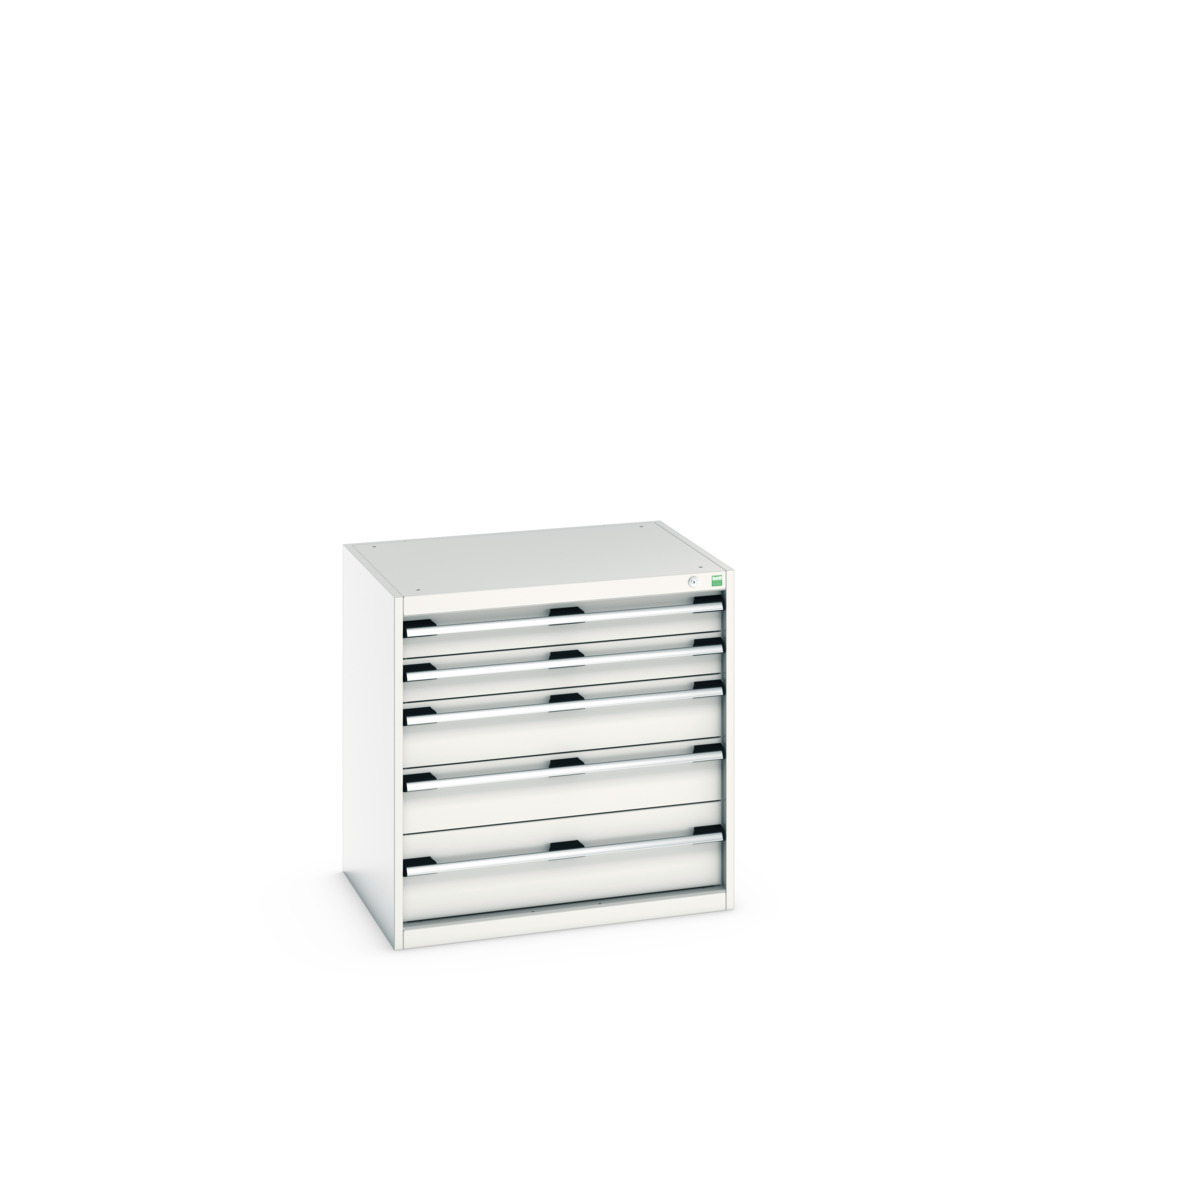 40020025.16V - cubio drawer cabinet